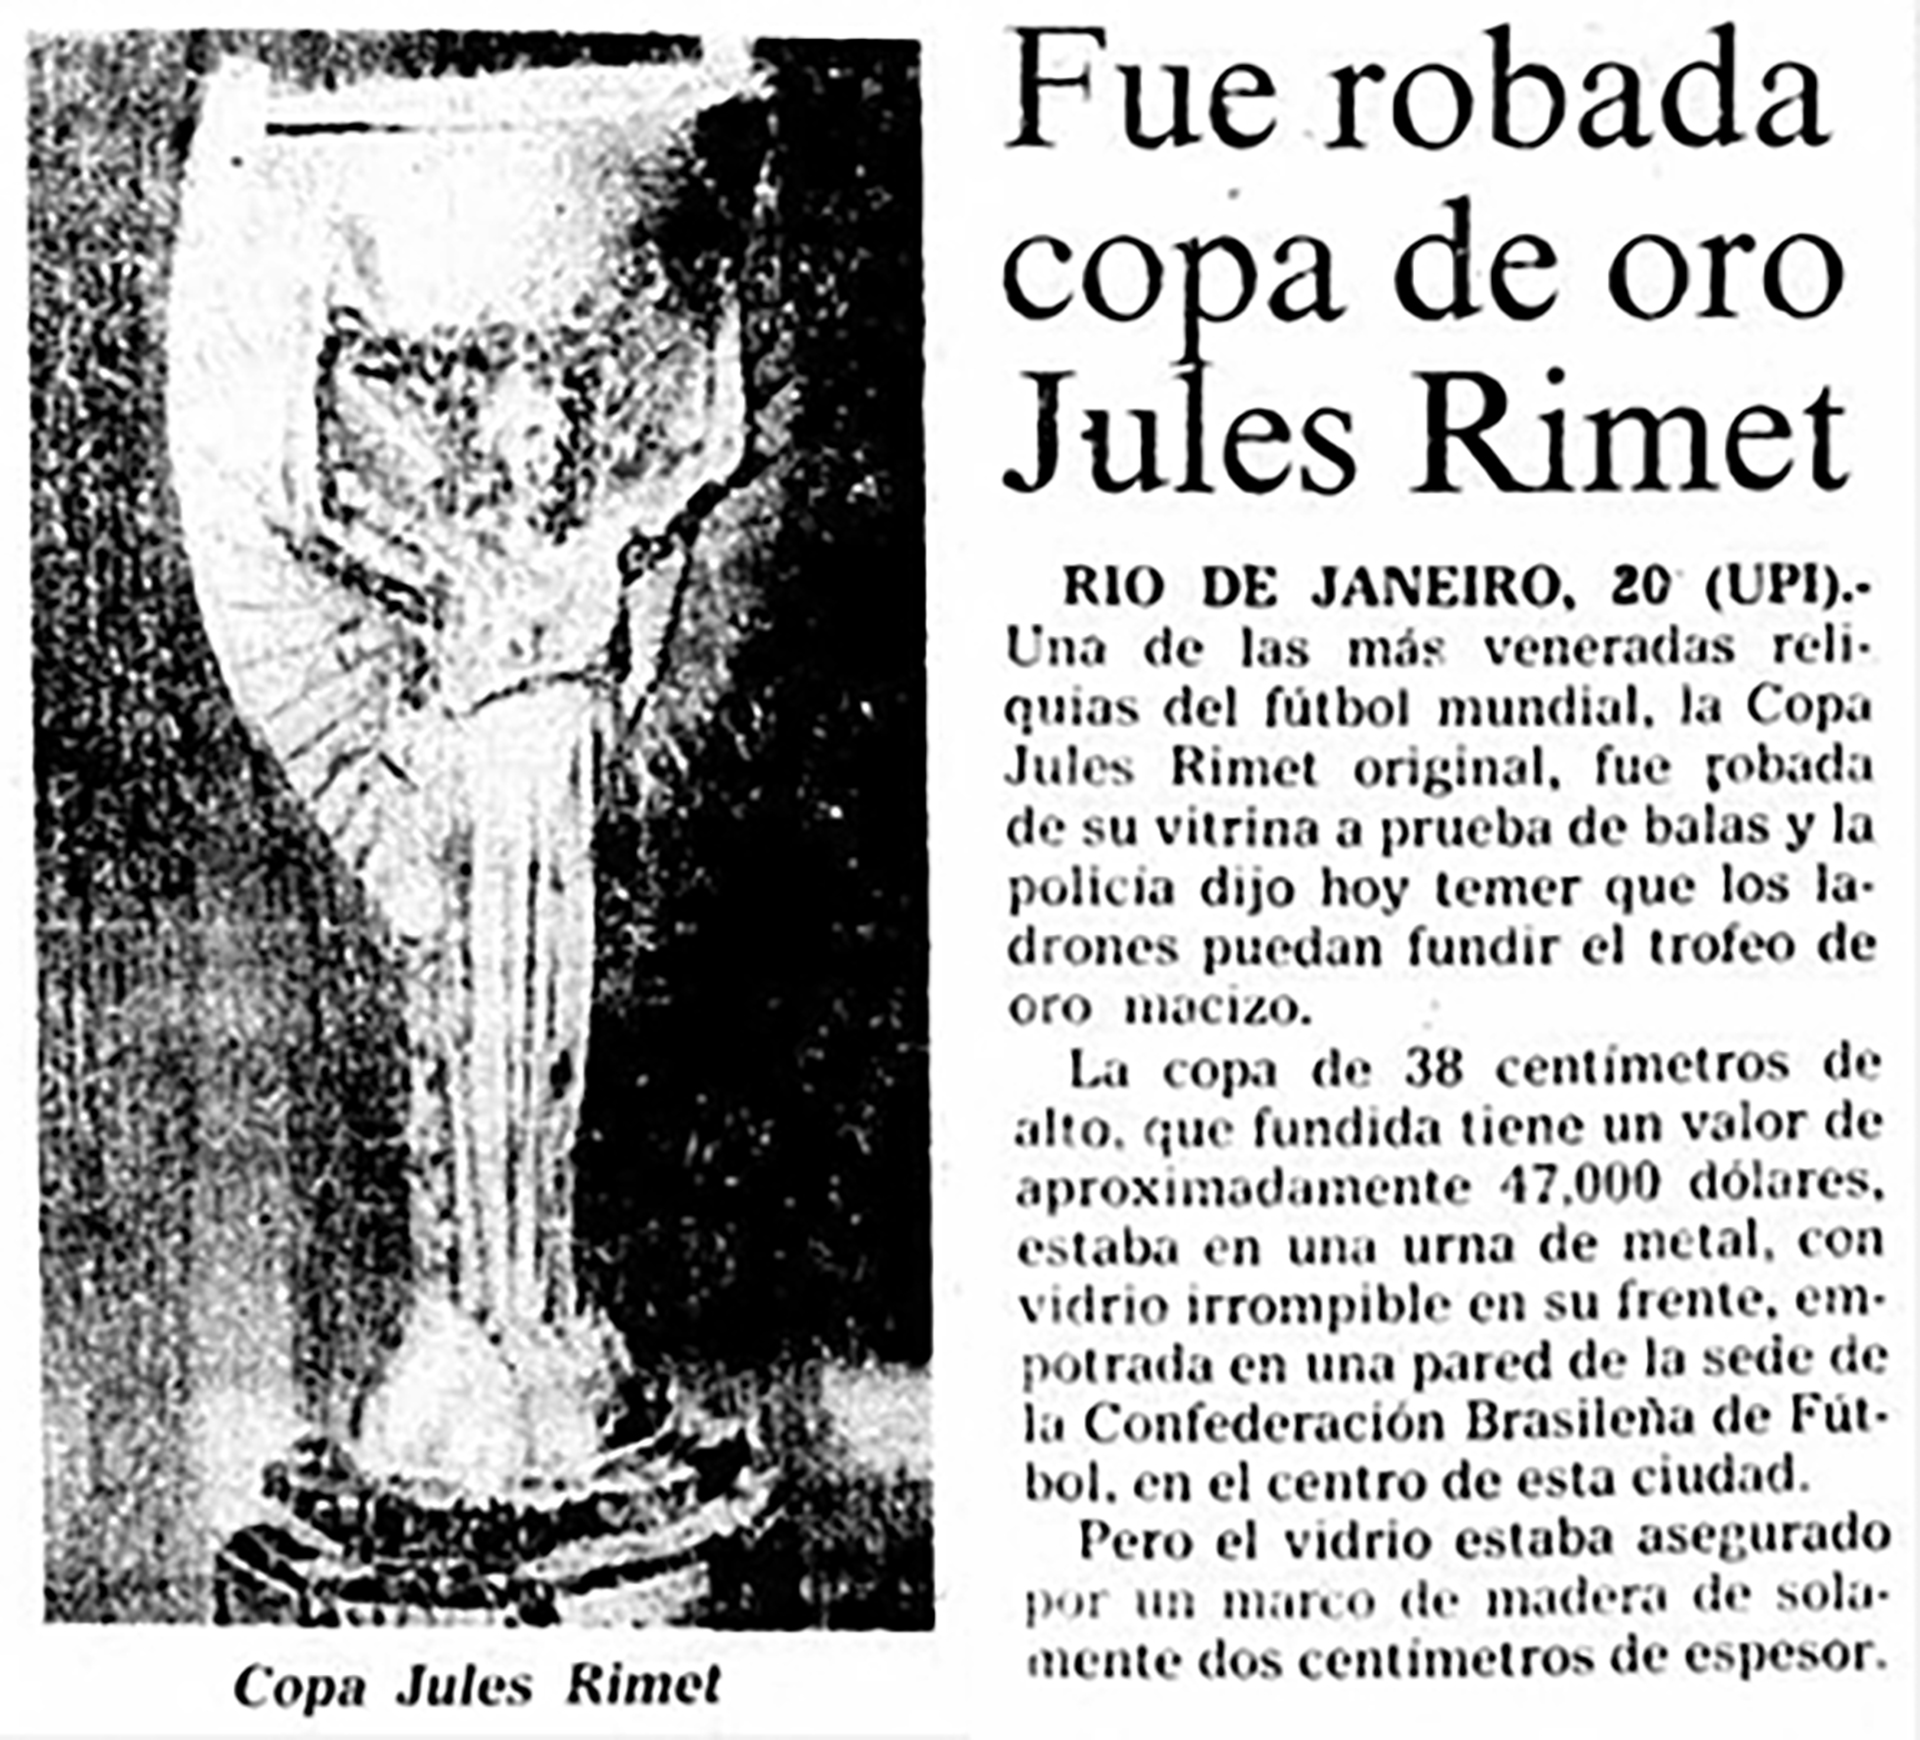 Uno de los titulares de los diarios de la época cuando la Copa Jules Rimet fue robada por segunda vez en Río de Janeiro